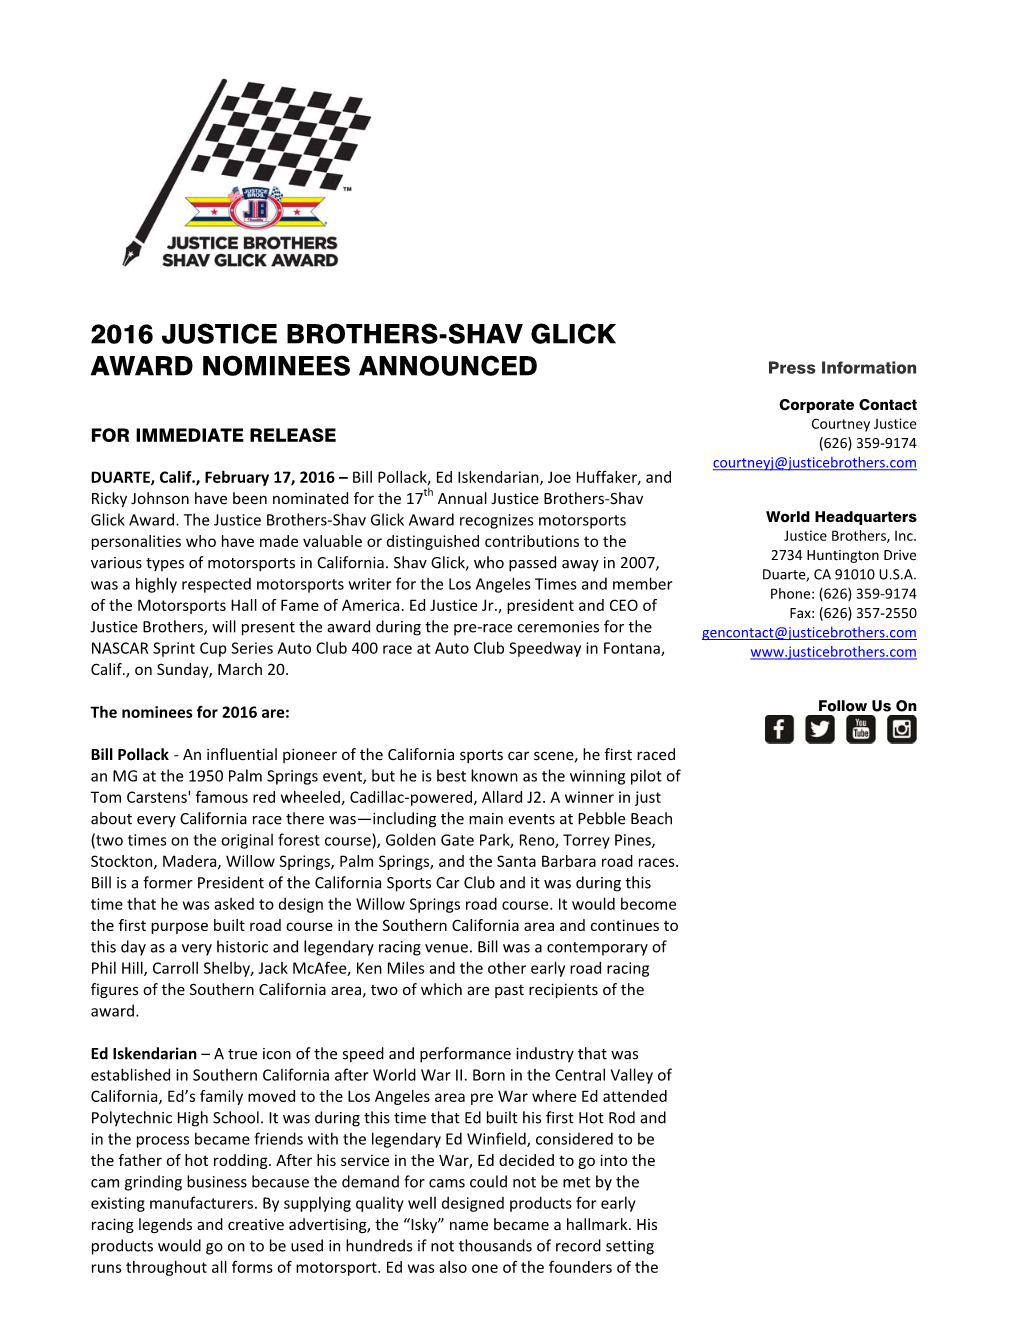 2016 Justice Brothers-Shav Glick Award Nominees